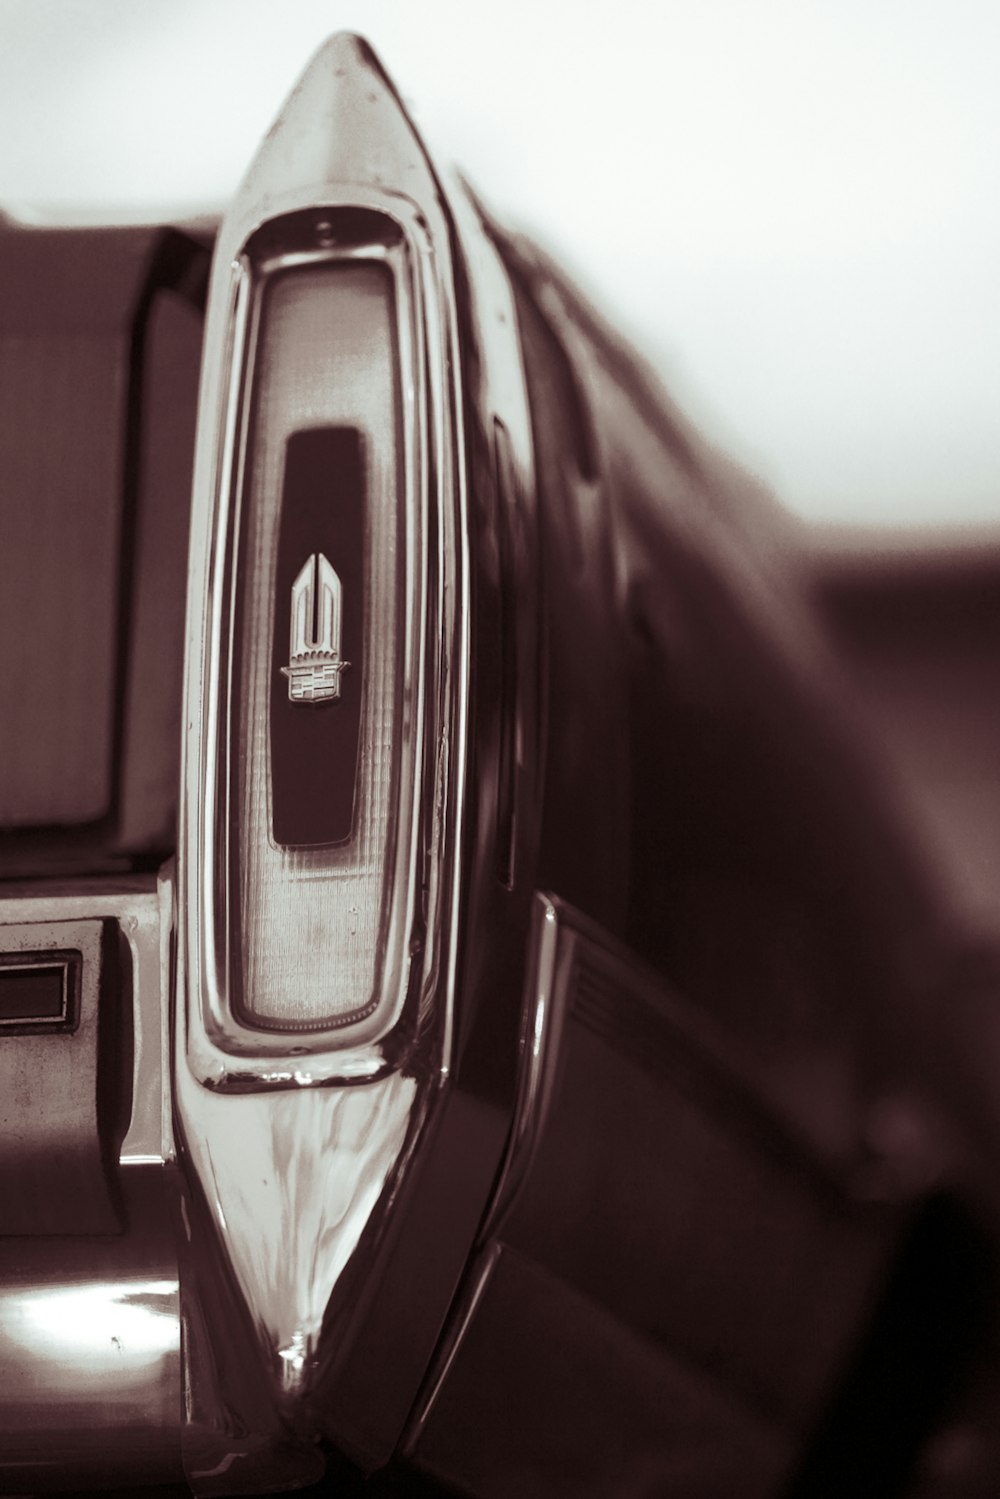 a close up of a car door handle